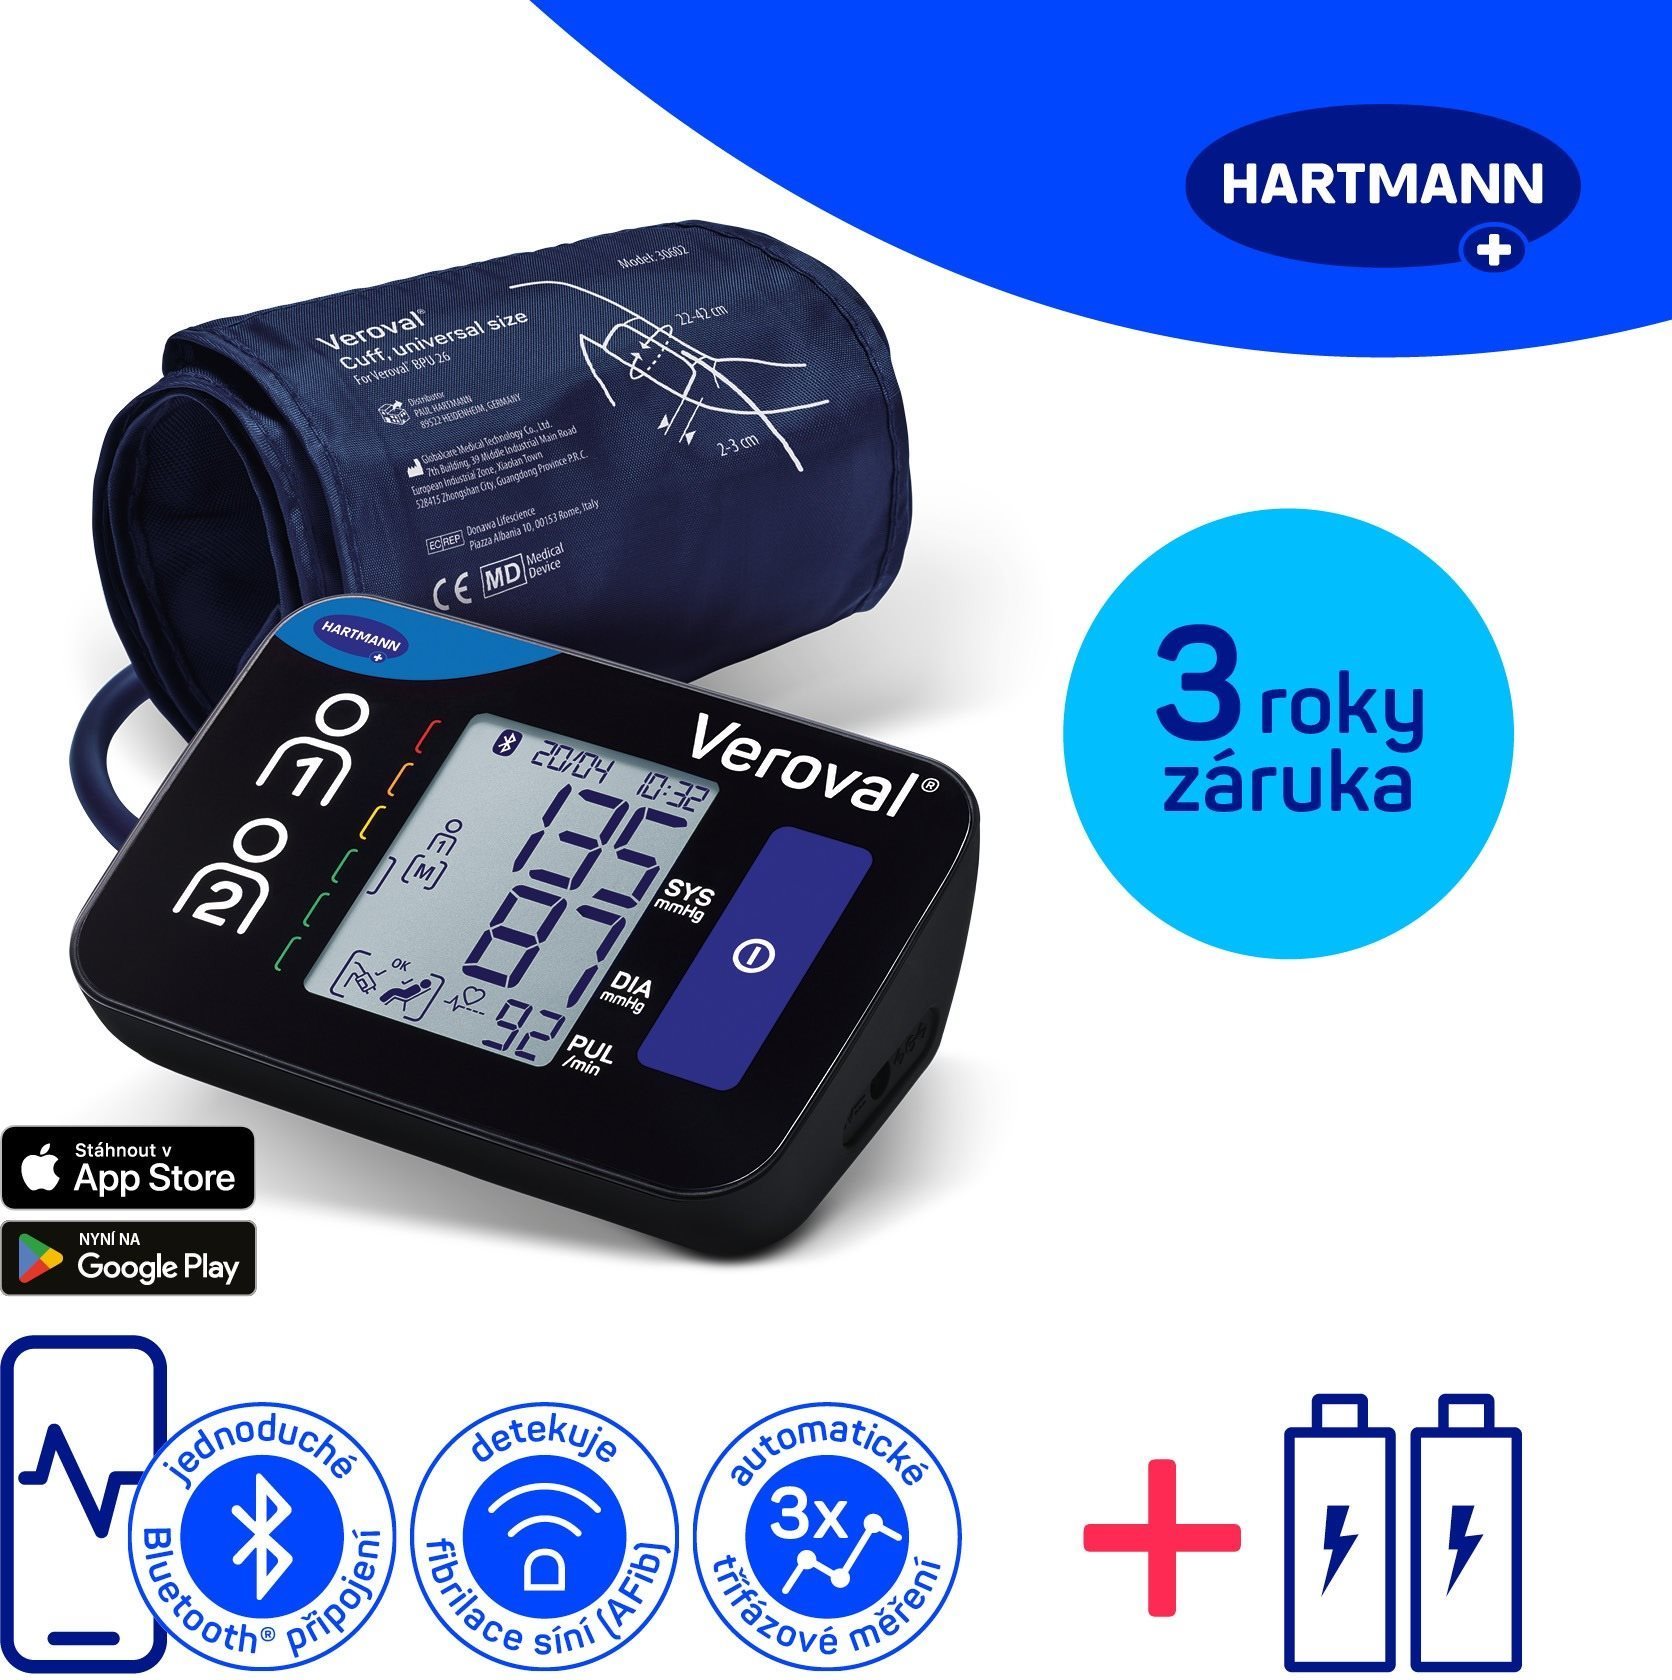 HARTMANN Veroval Compact + Connect AFIB és Bluetooth csatlakozással